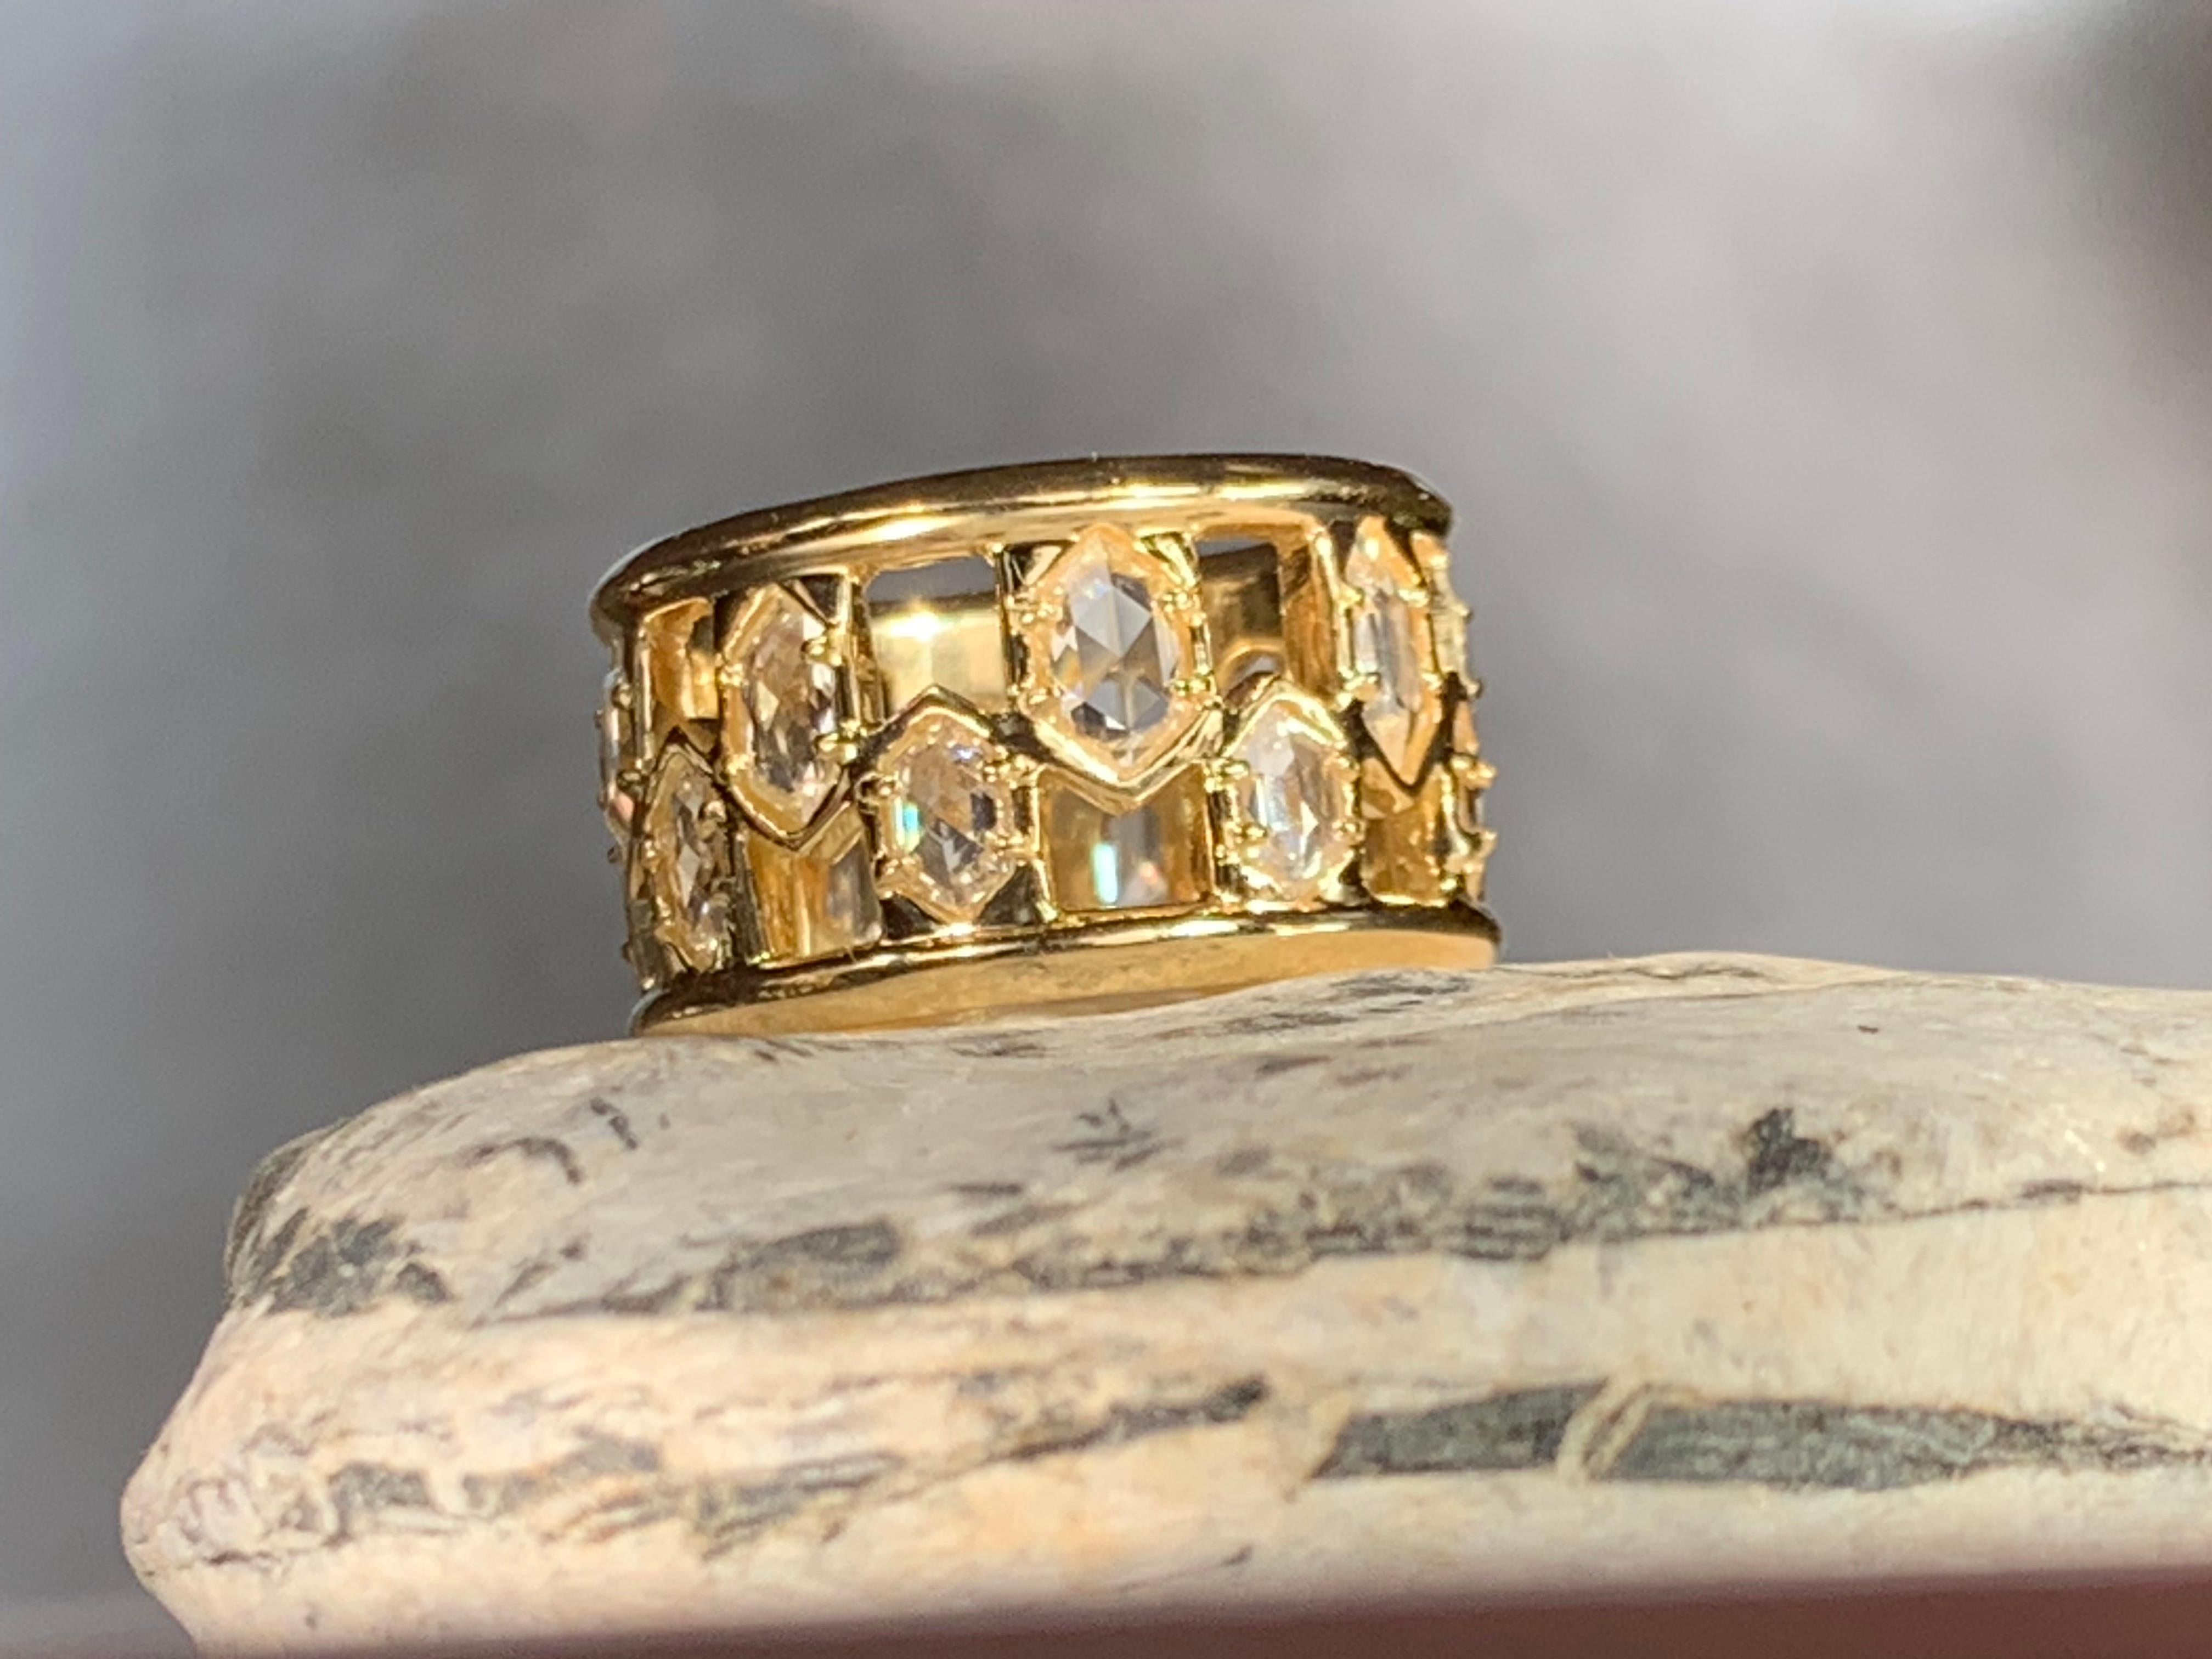 Dieser sechseckige Diamantring aus 18-karätigem Gelbgold, der zu einer Serie einzigartiger breiter Ringe gehört, ist mit einem Muster versehen, das eine spektakuläre Lichtwirkung erzeugt. Wir verwenden hochwertige weiße Diamanten im Rosenschliff, um